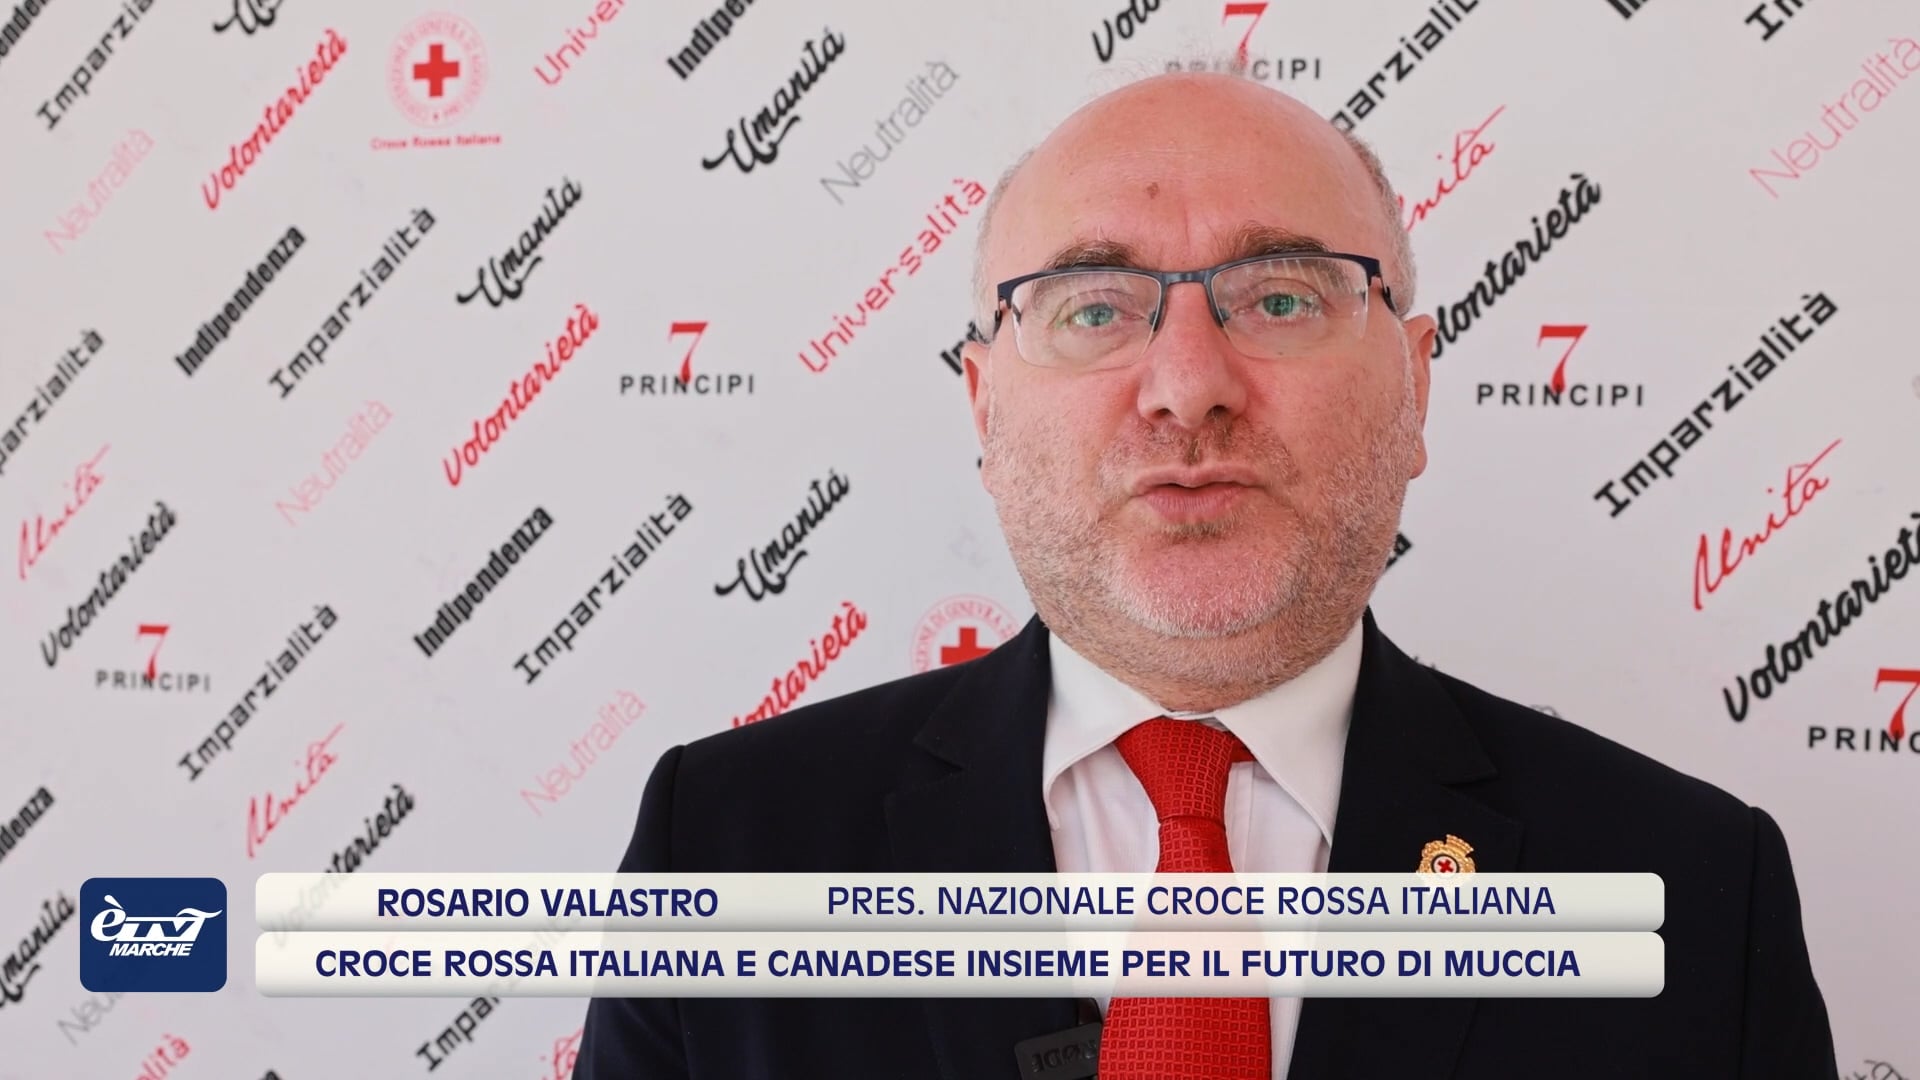 Croce Rossa Italiana e Canadese insieme per il futuro di Muccia - VIDEO